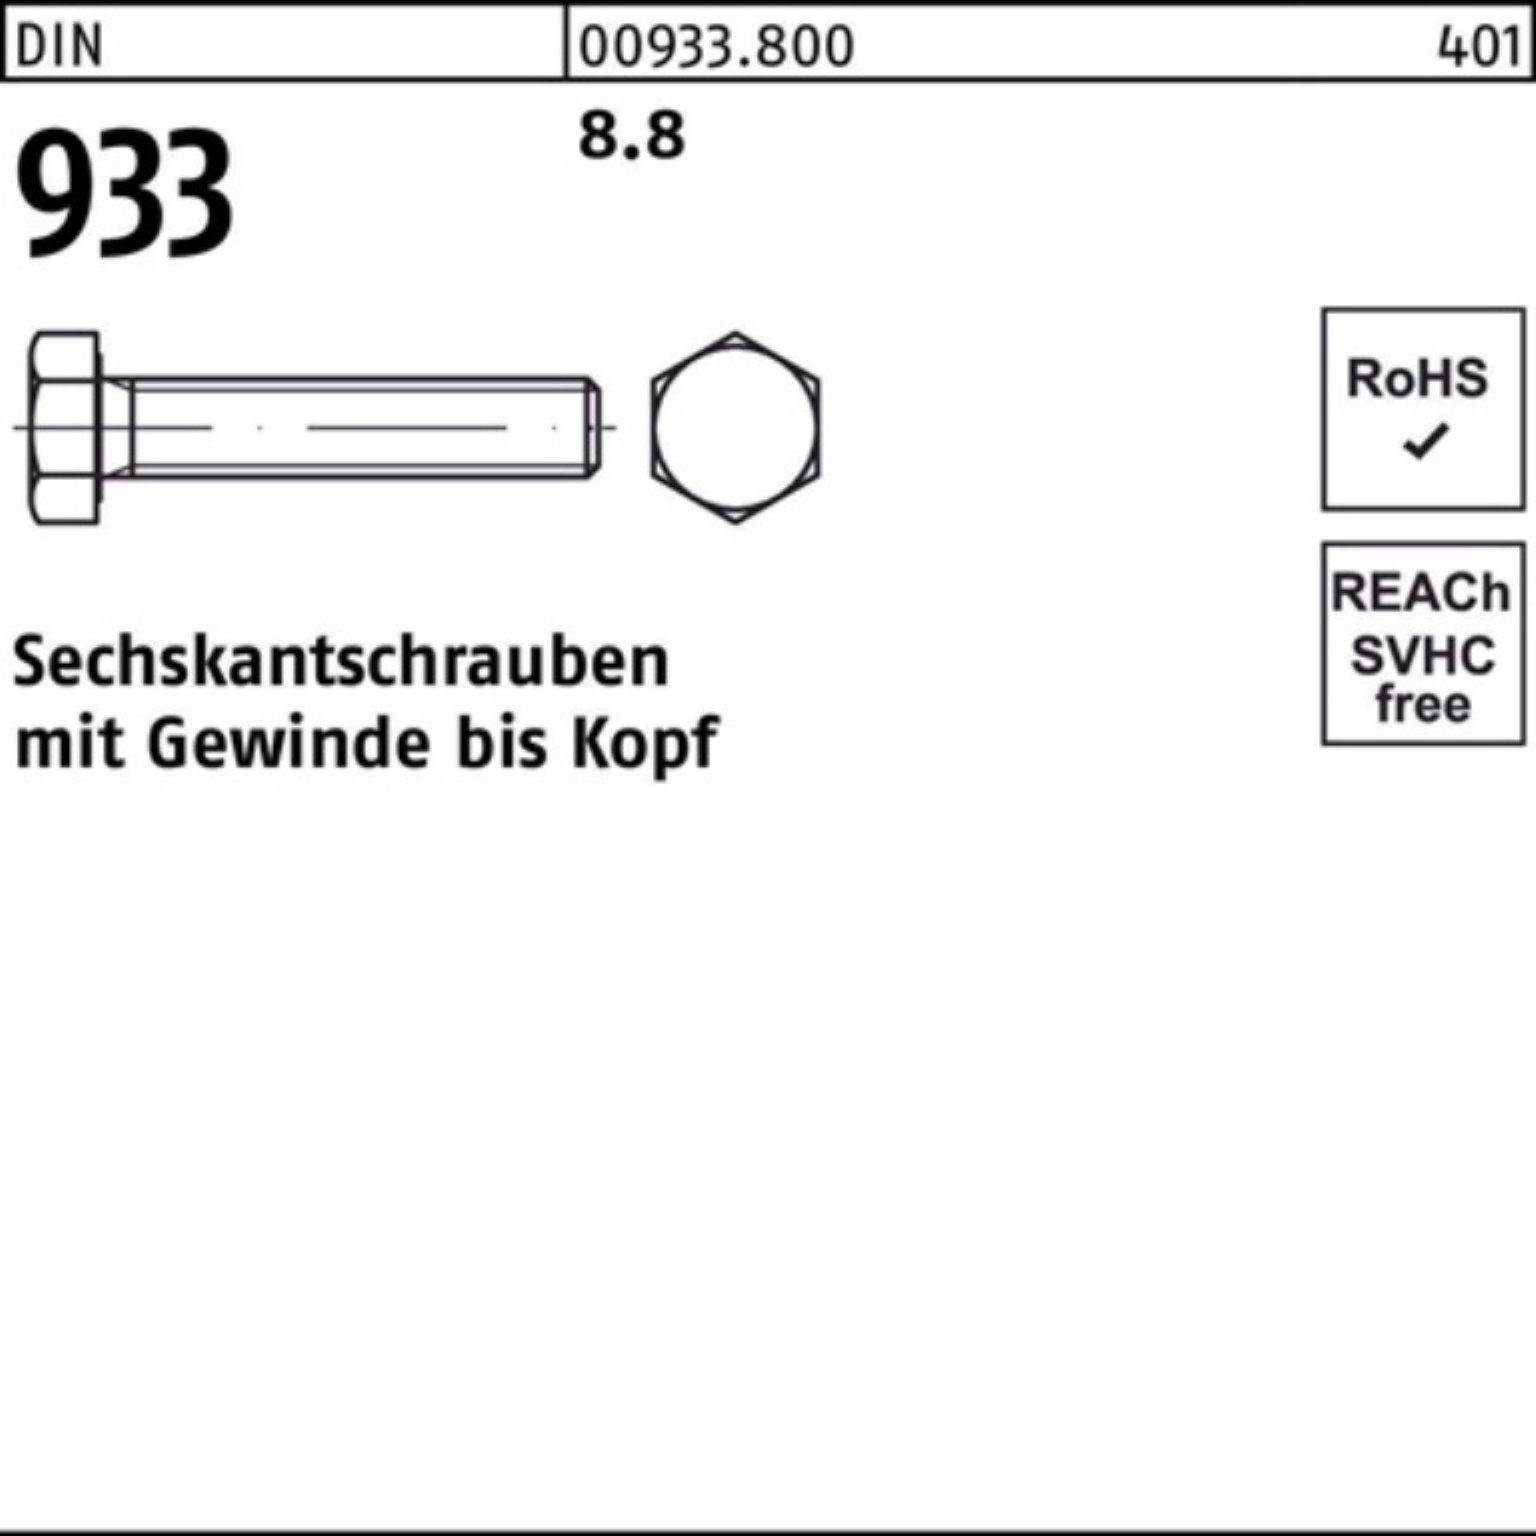 M24x Stück 160 100er Reyher 933 DIN DIN Sechskantschraube VG 1 8.8 933 Sechskantschraube Pack